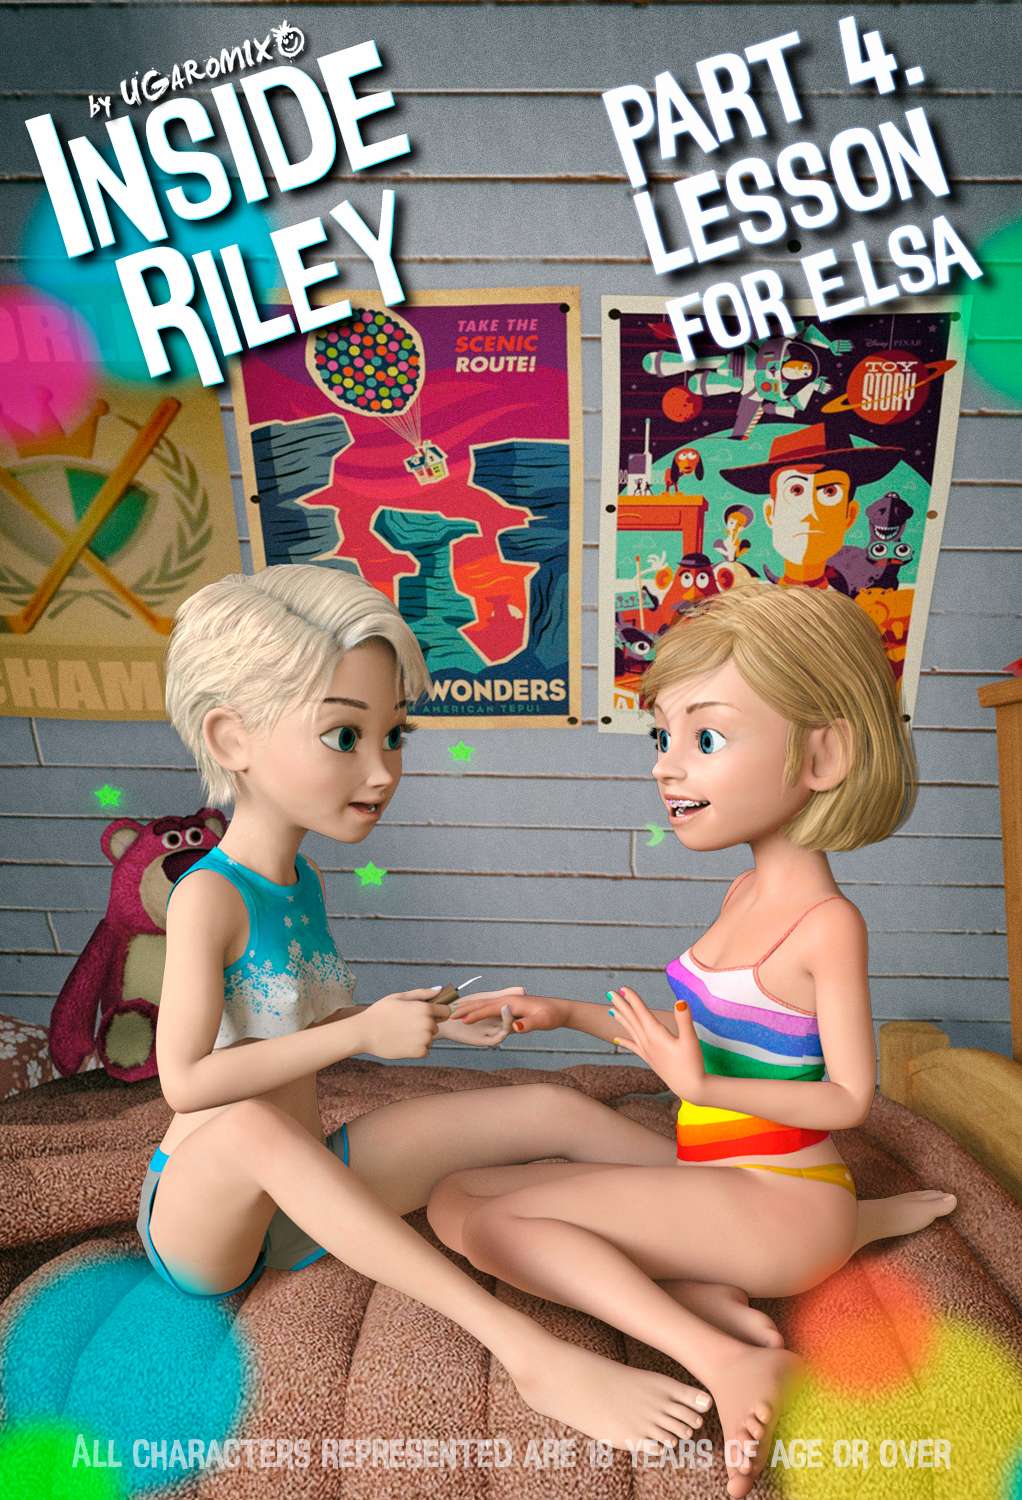 Inside Riley Ep4 - Lesson For Elsa